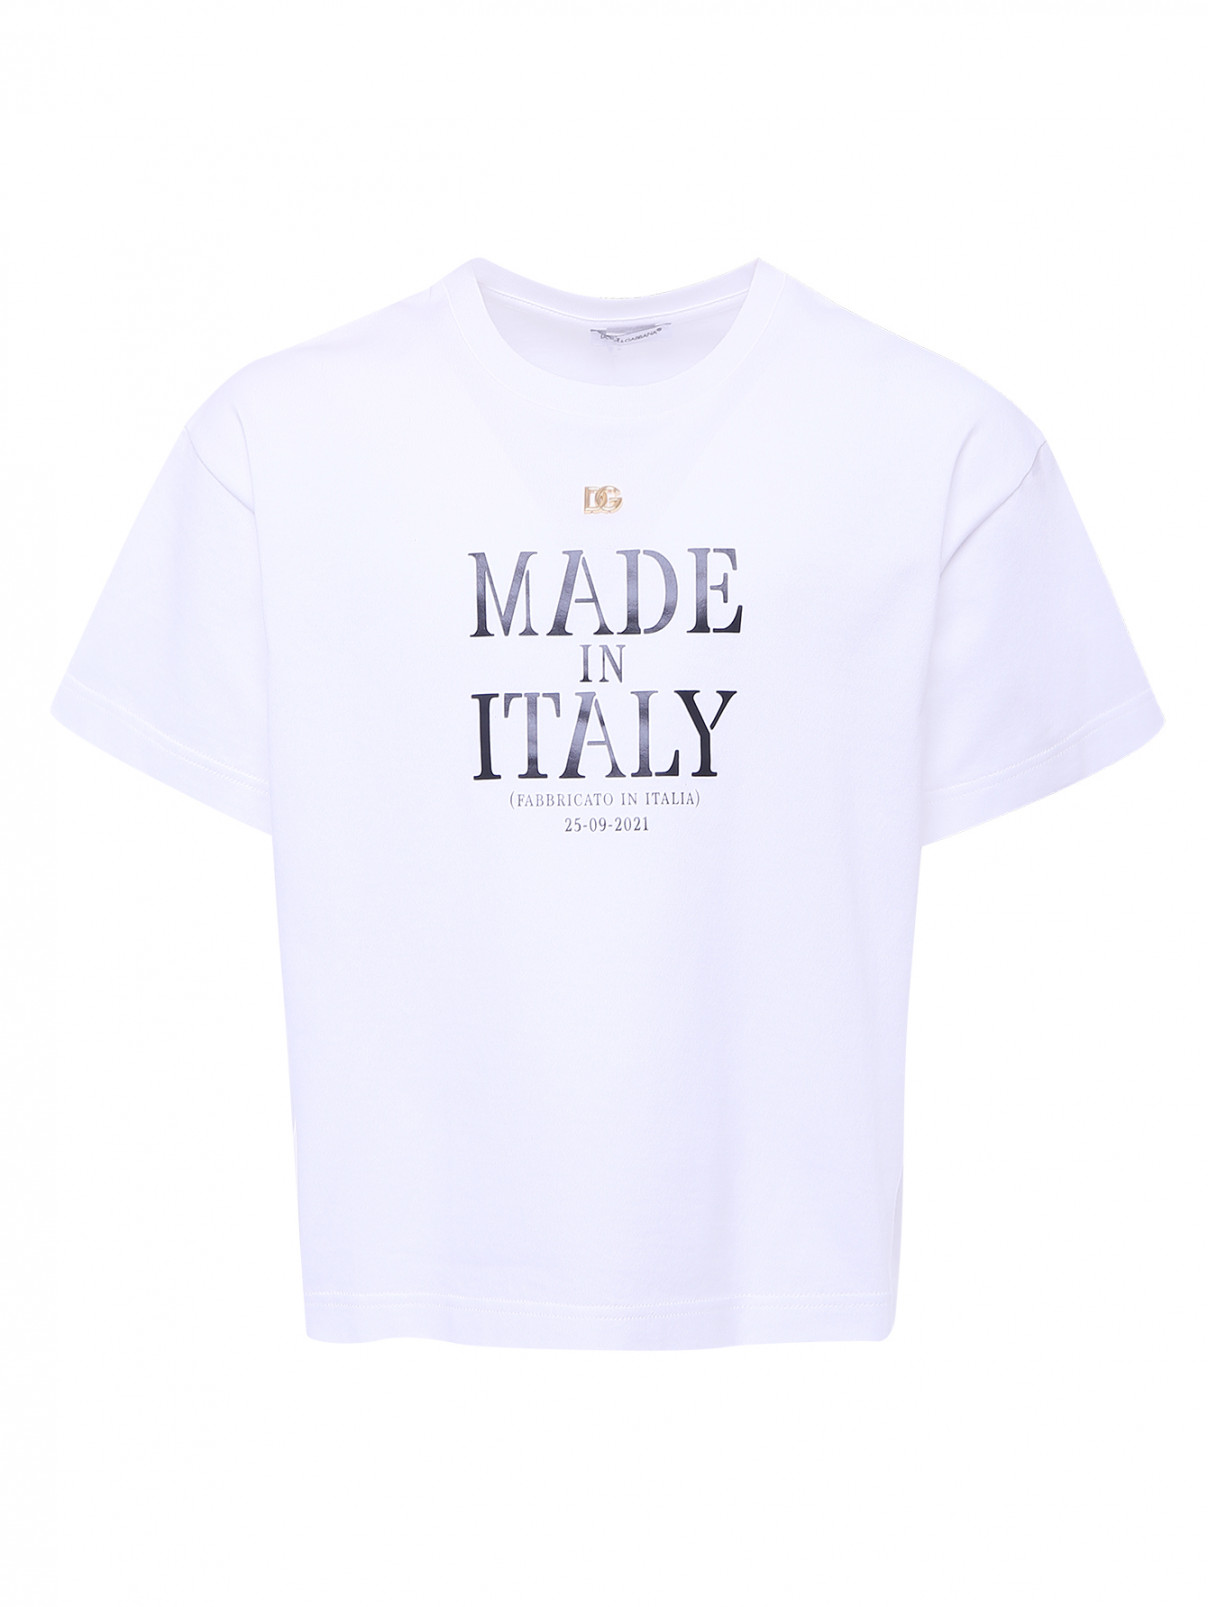 Хлопковая футболка с принтом Dolce & Gabbana  –  Общий вид  – Цвет:  Белый